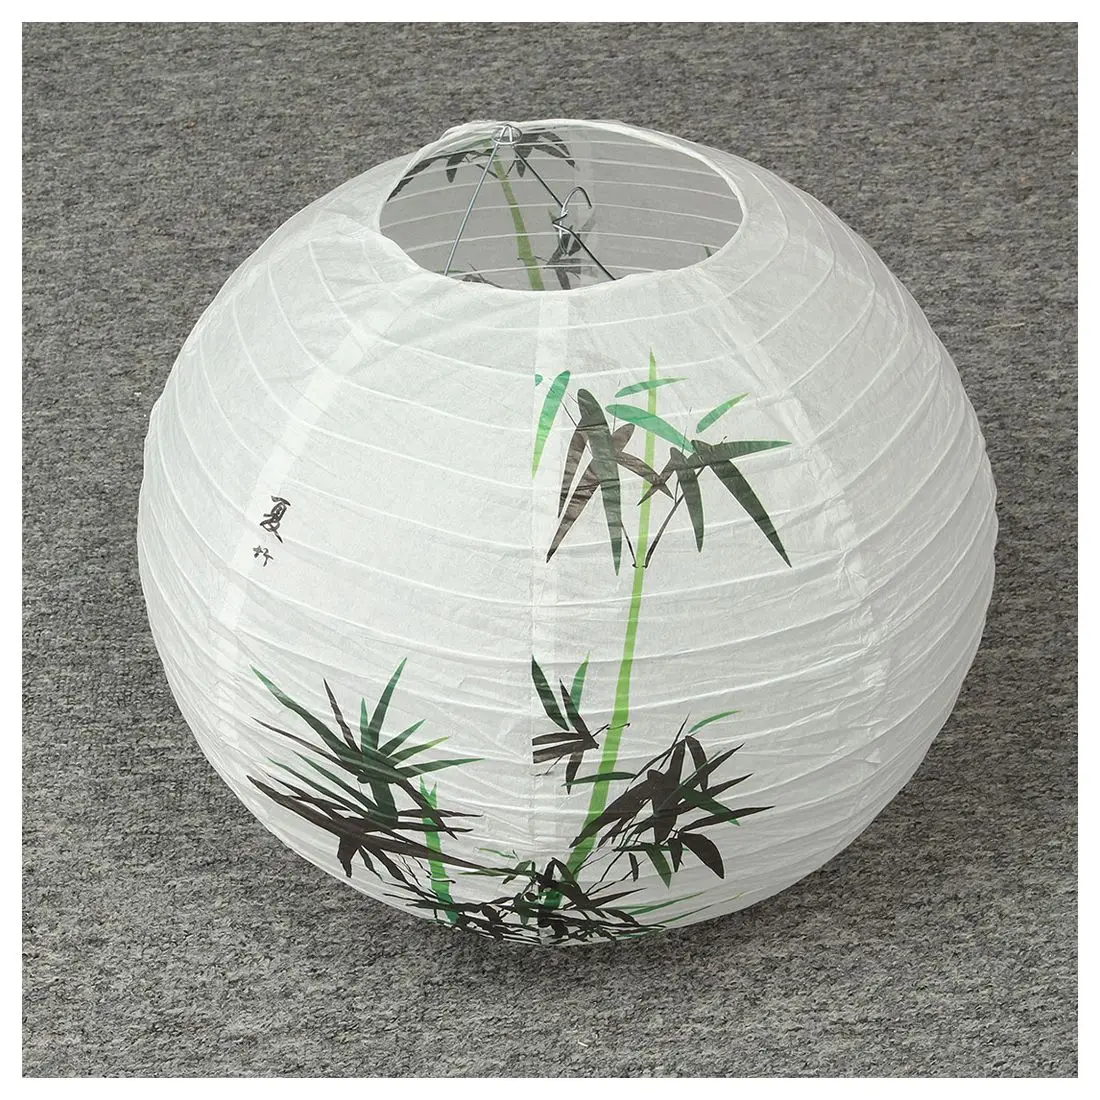 40 см абажур бумажный фонарь Восточный стиль свет украшение китайский узор: бамбук